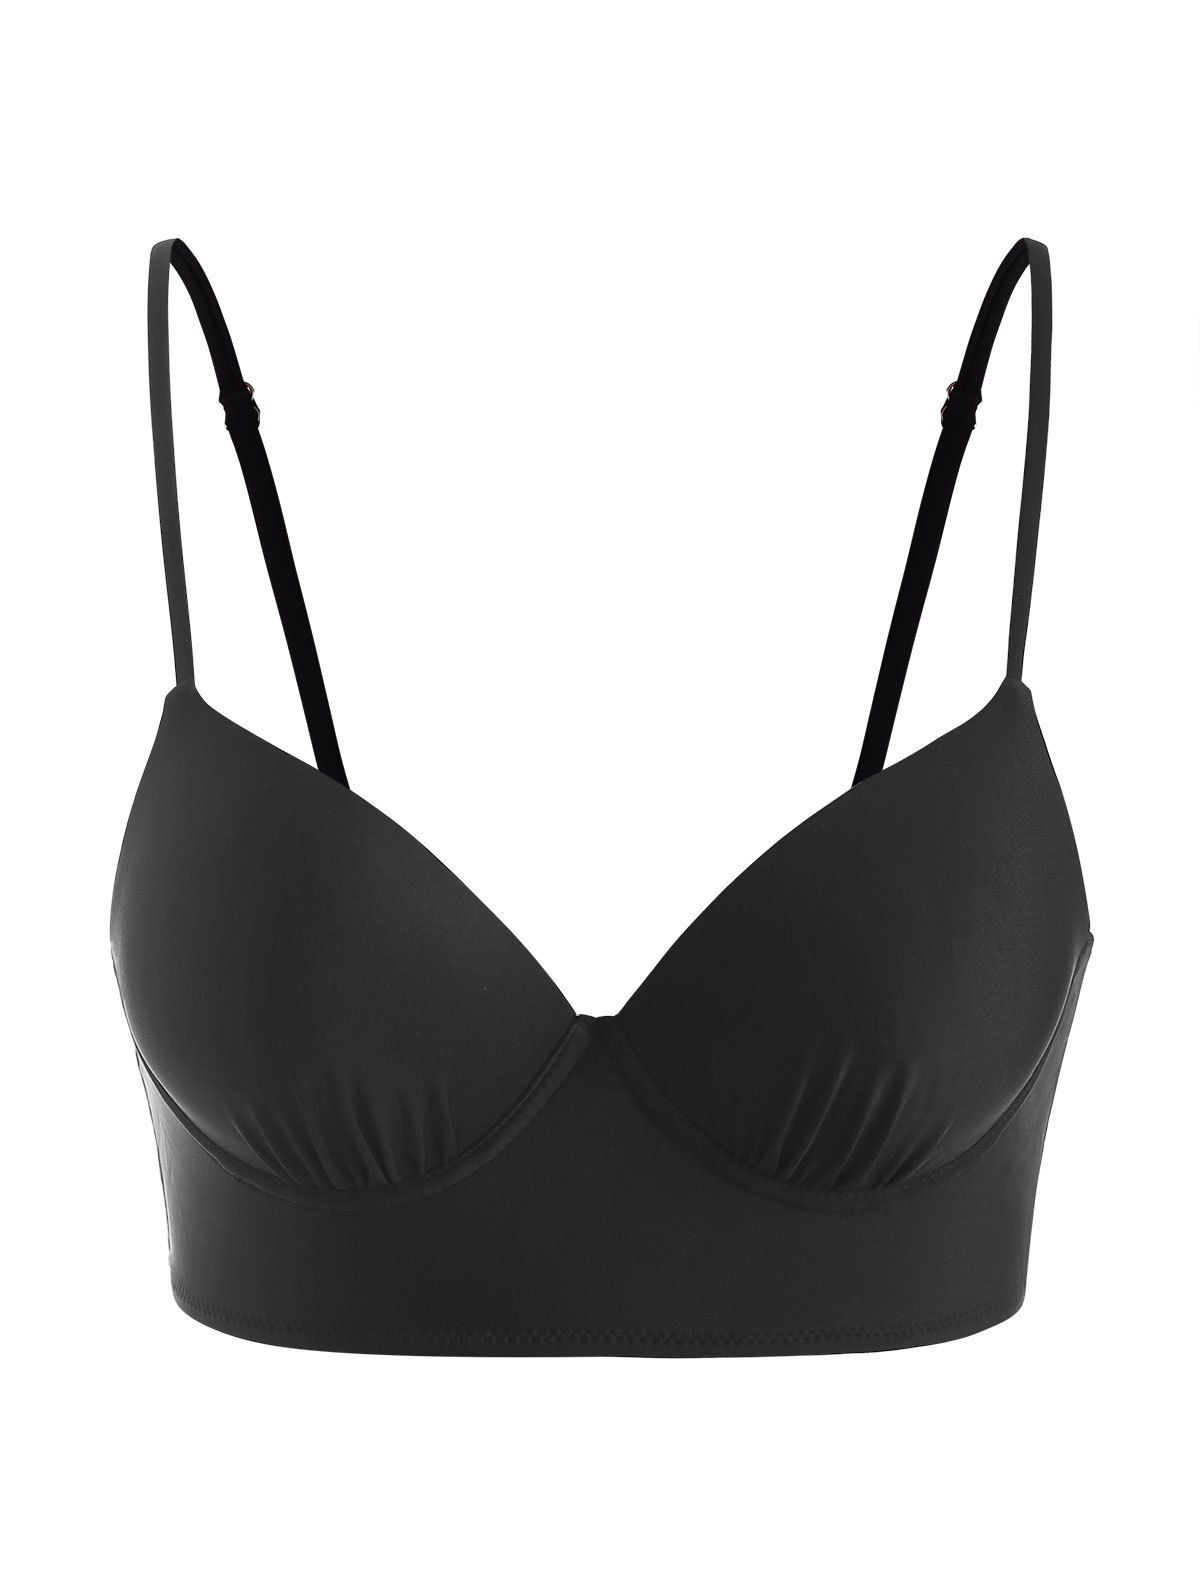 Underwire Swim Top Push Up Solid Color Cami Strappy Summer Beach Bikini Top - BLACK XL